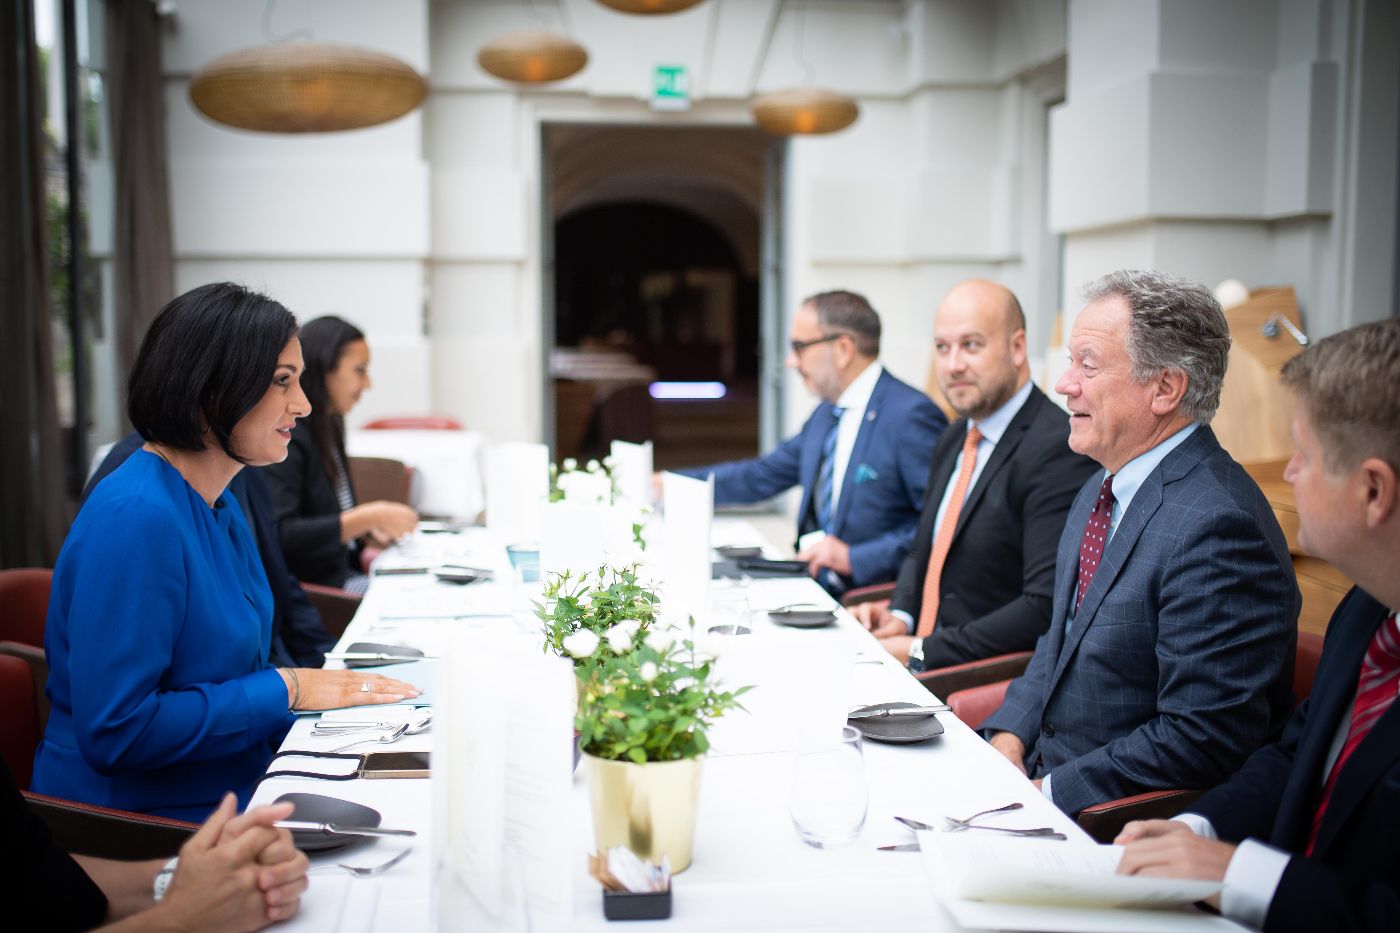 Bundesministerin Köstinger, David Beasly, Direktor des Welternährungsprogramms, und weitere Personen sitzen gemeinsam am Tisch und sprechen miteinander